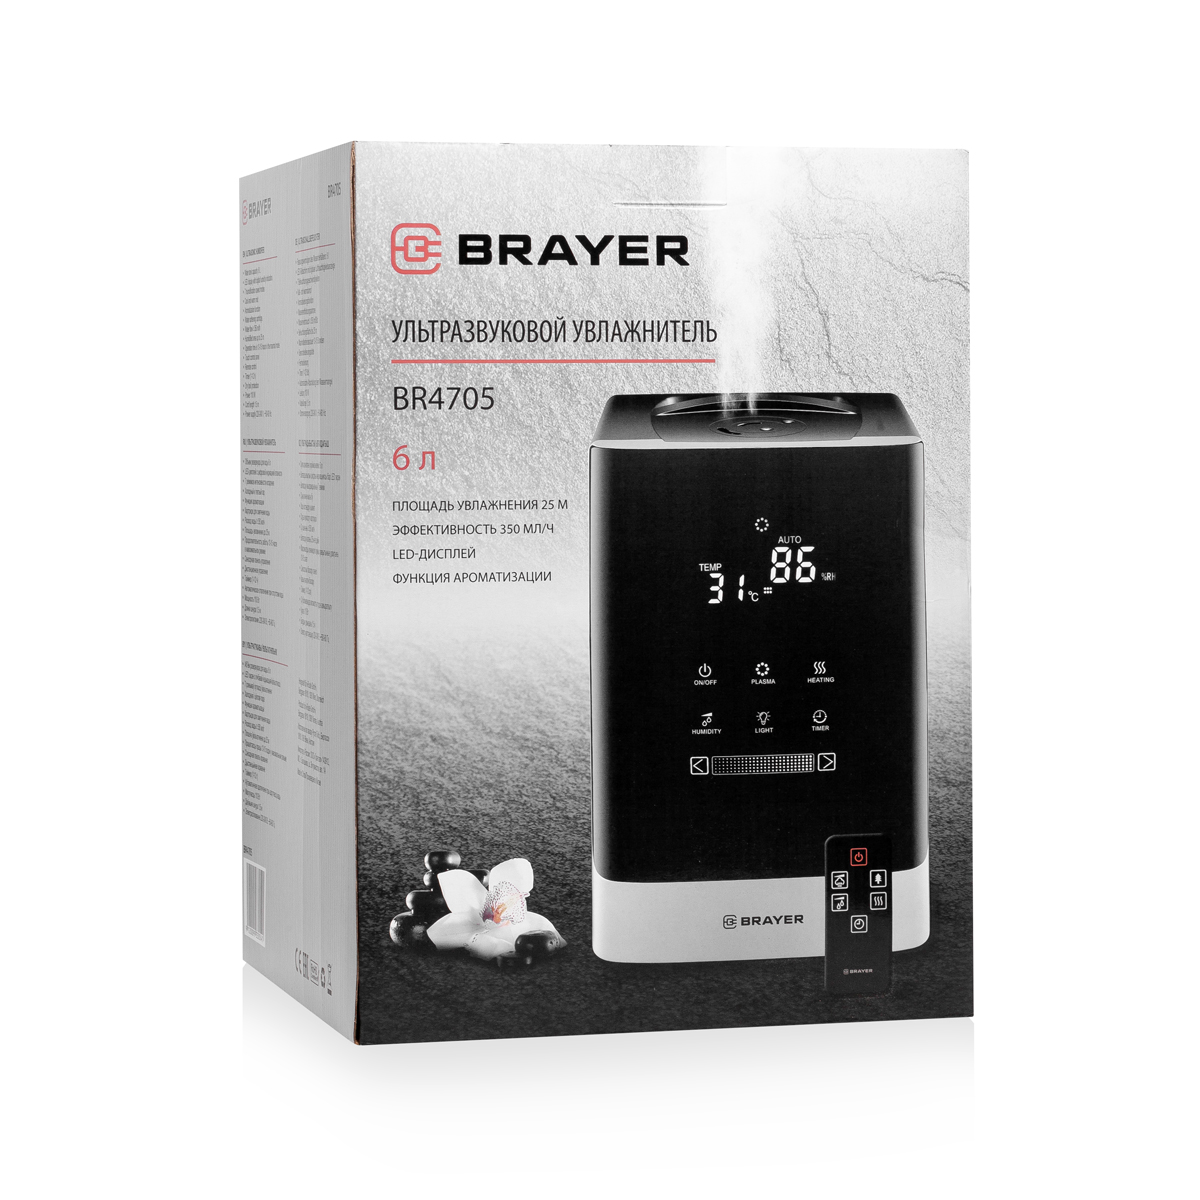 Ультразвуковой увлажнитель BRAYER BR4705